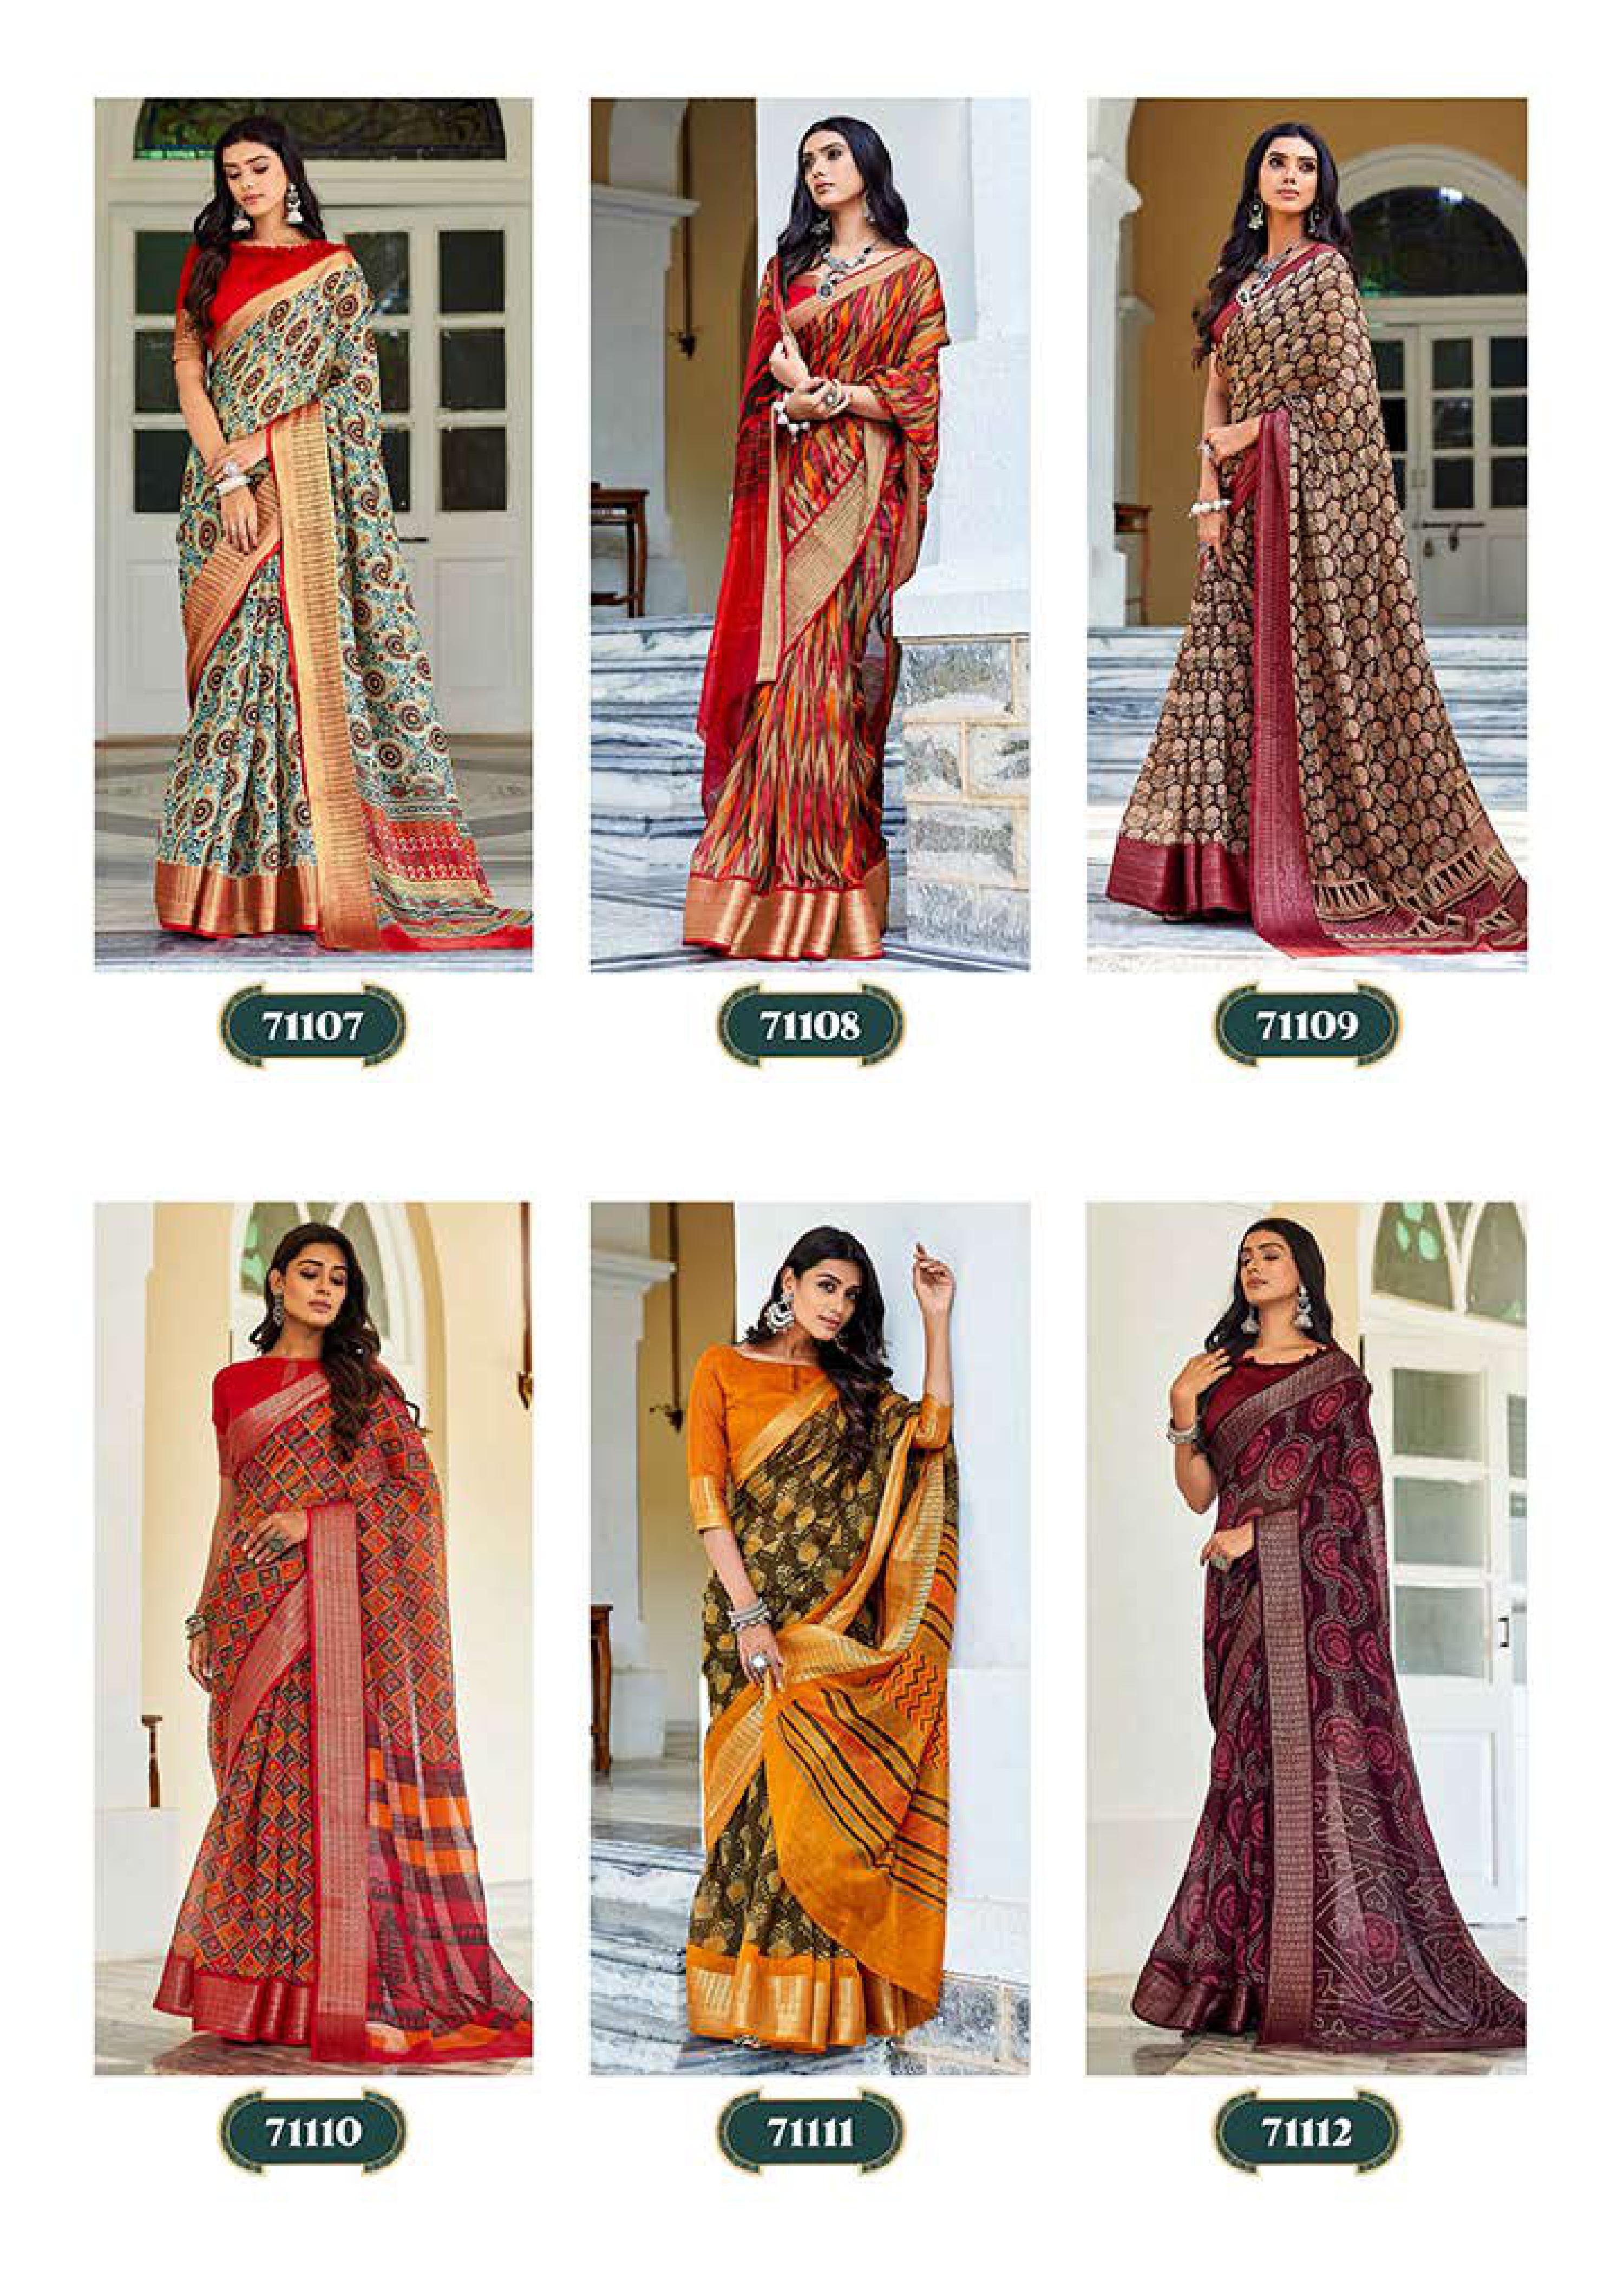 Shangrila Kanjivaram Silk Jacquard Festive Wear Saree Catalog